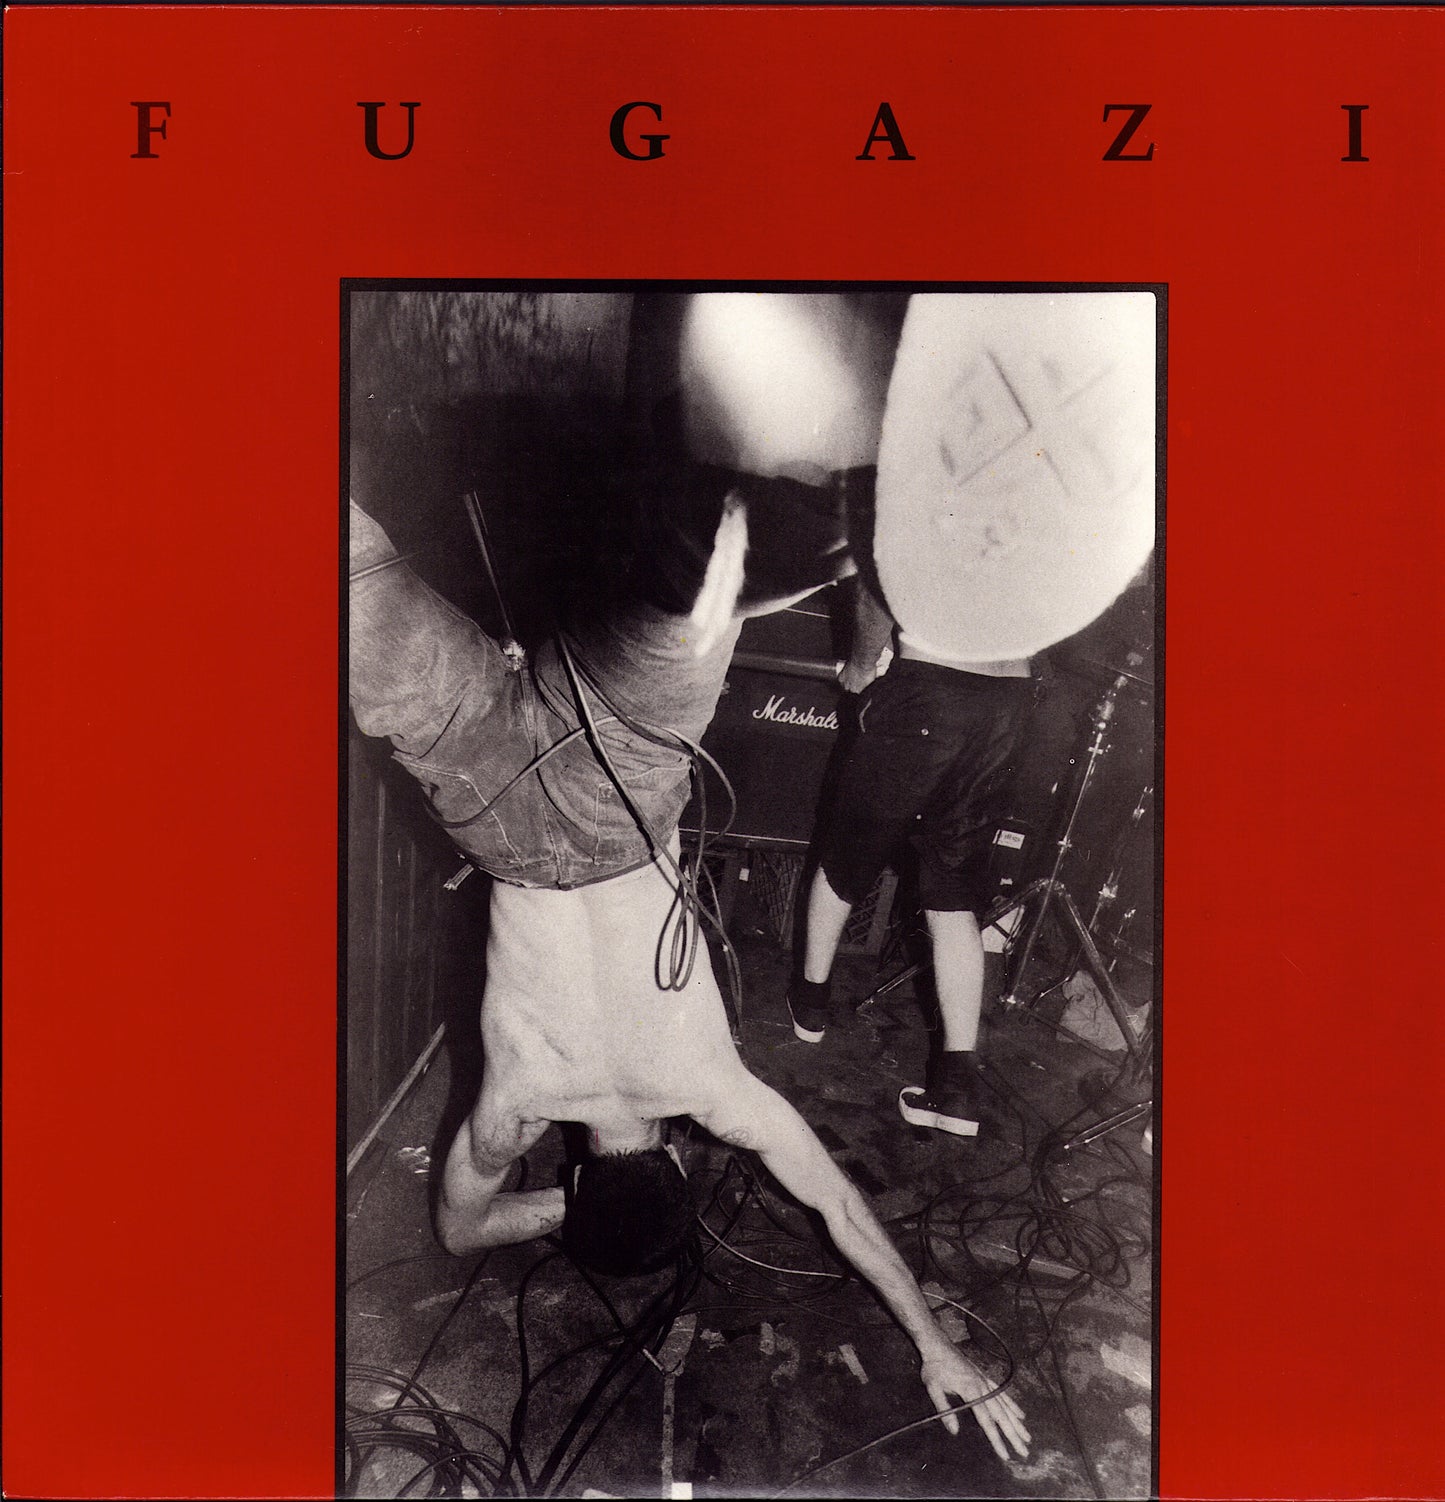 Fugazi - Fugazi Vinyl LP